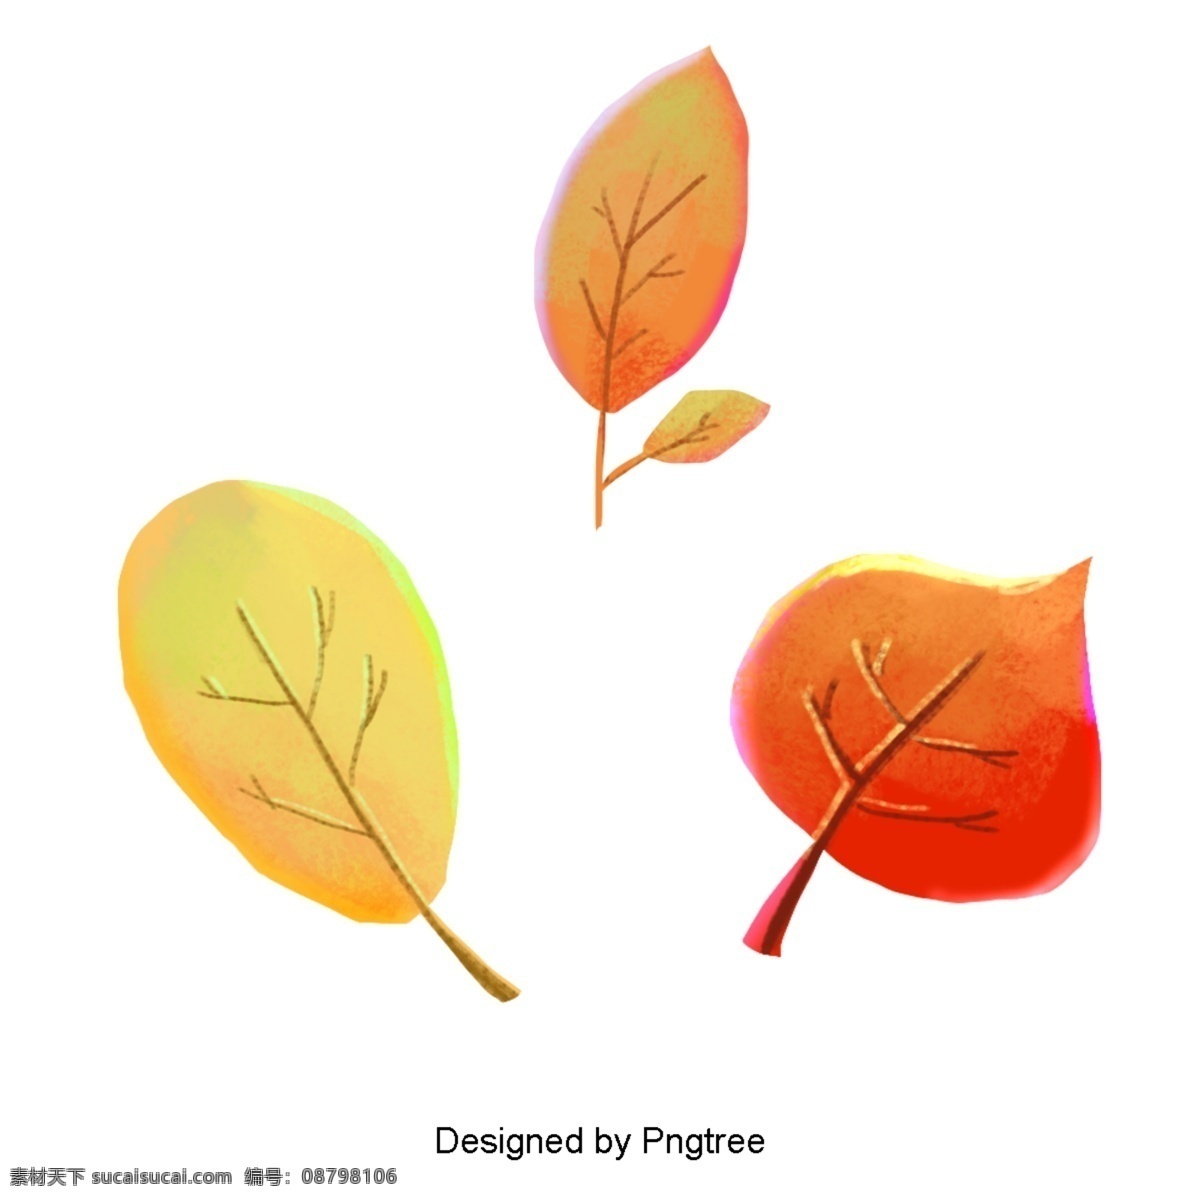 美丽 卡通 可爱 手绘 创意 秋叶 绘画 秋天 树叶 渐变 亮色